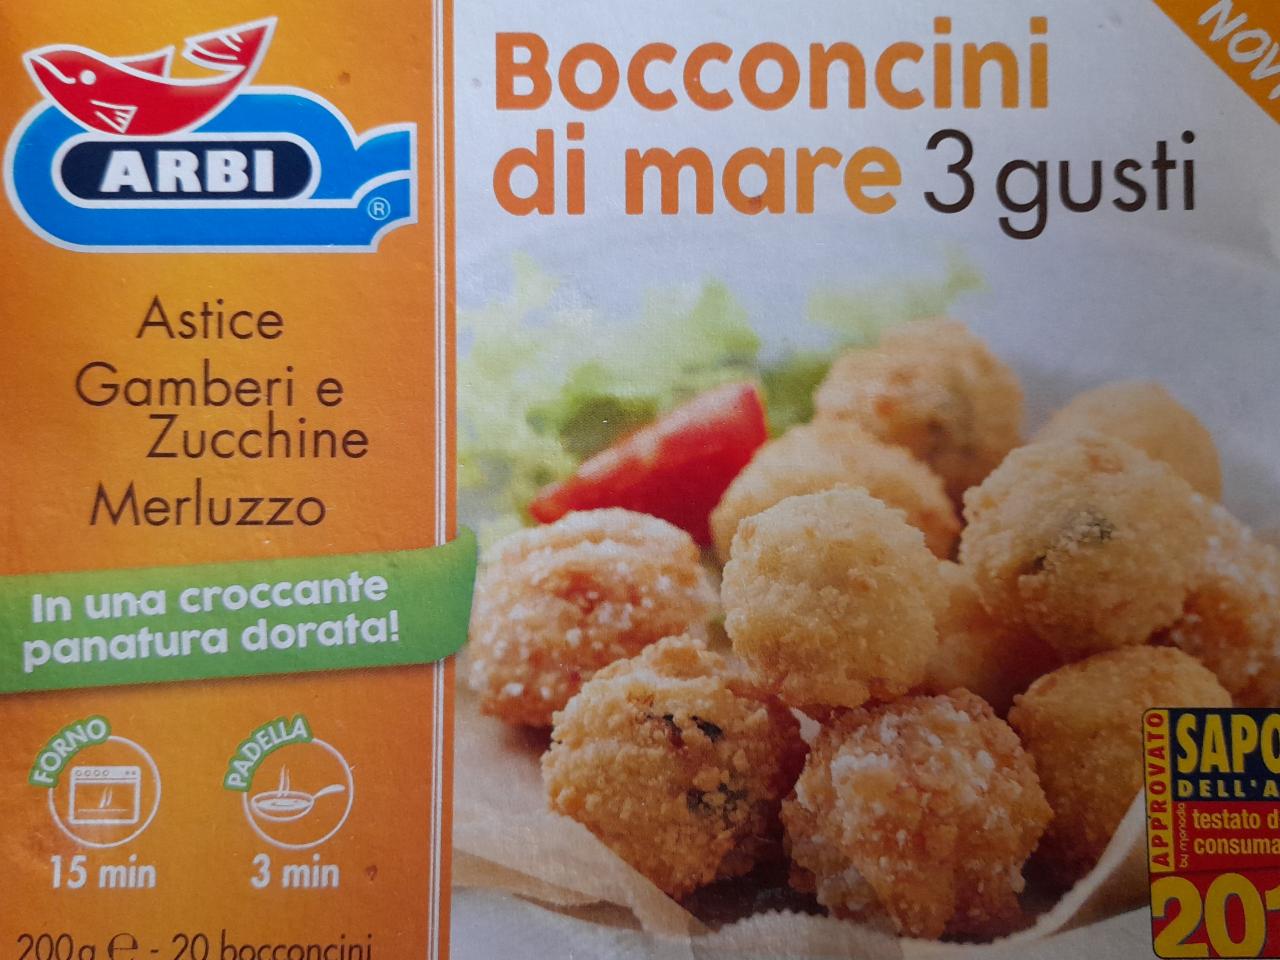 Fotografie - Bocconcini di mare 3 gusti Astice, Gamberi e Zucchine, Merluzzo Arbi